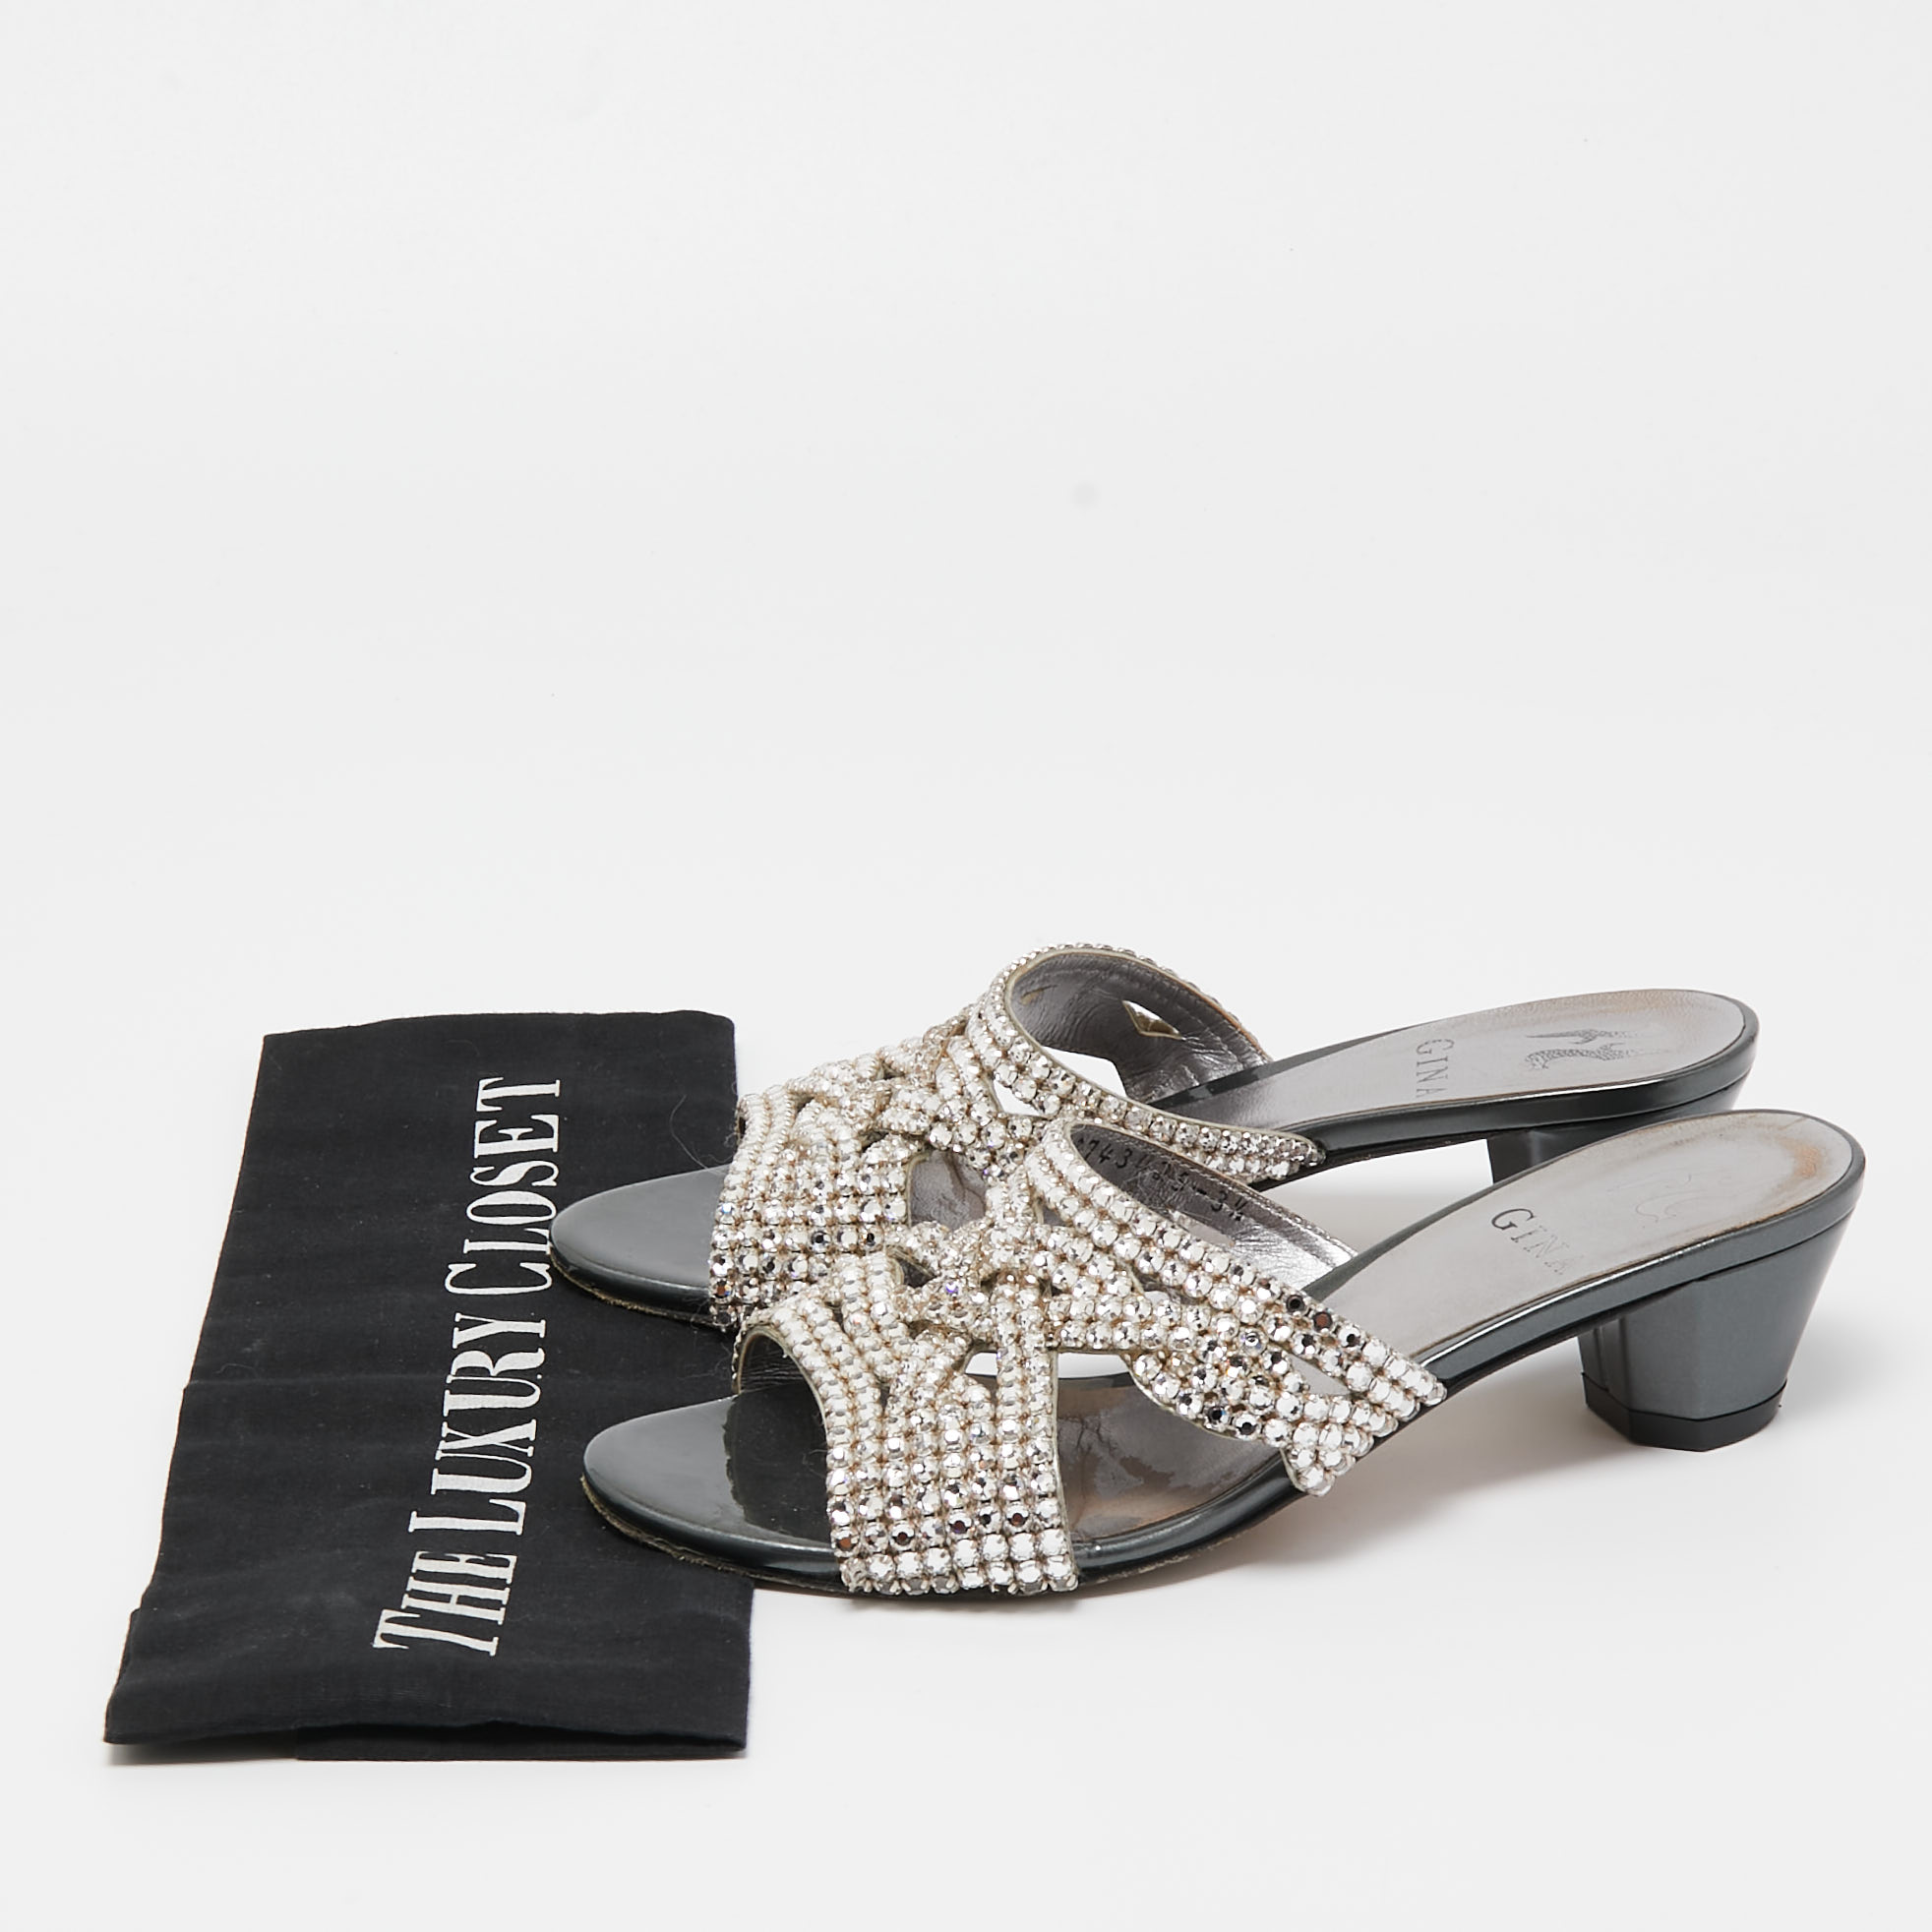 Gina Silver/Grey Crystal Embellished Leather Slide Sandals Size 36.5